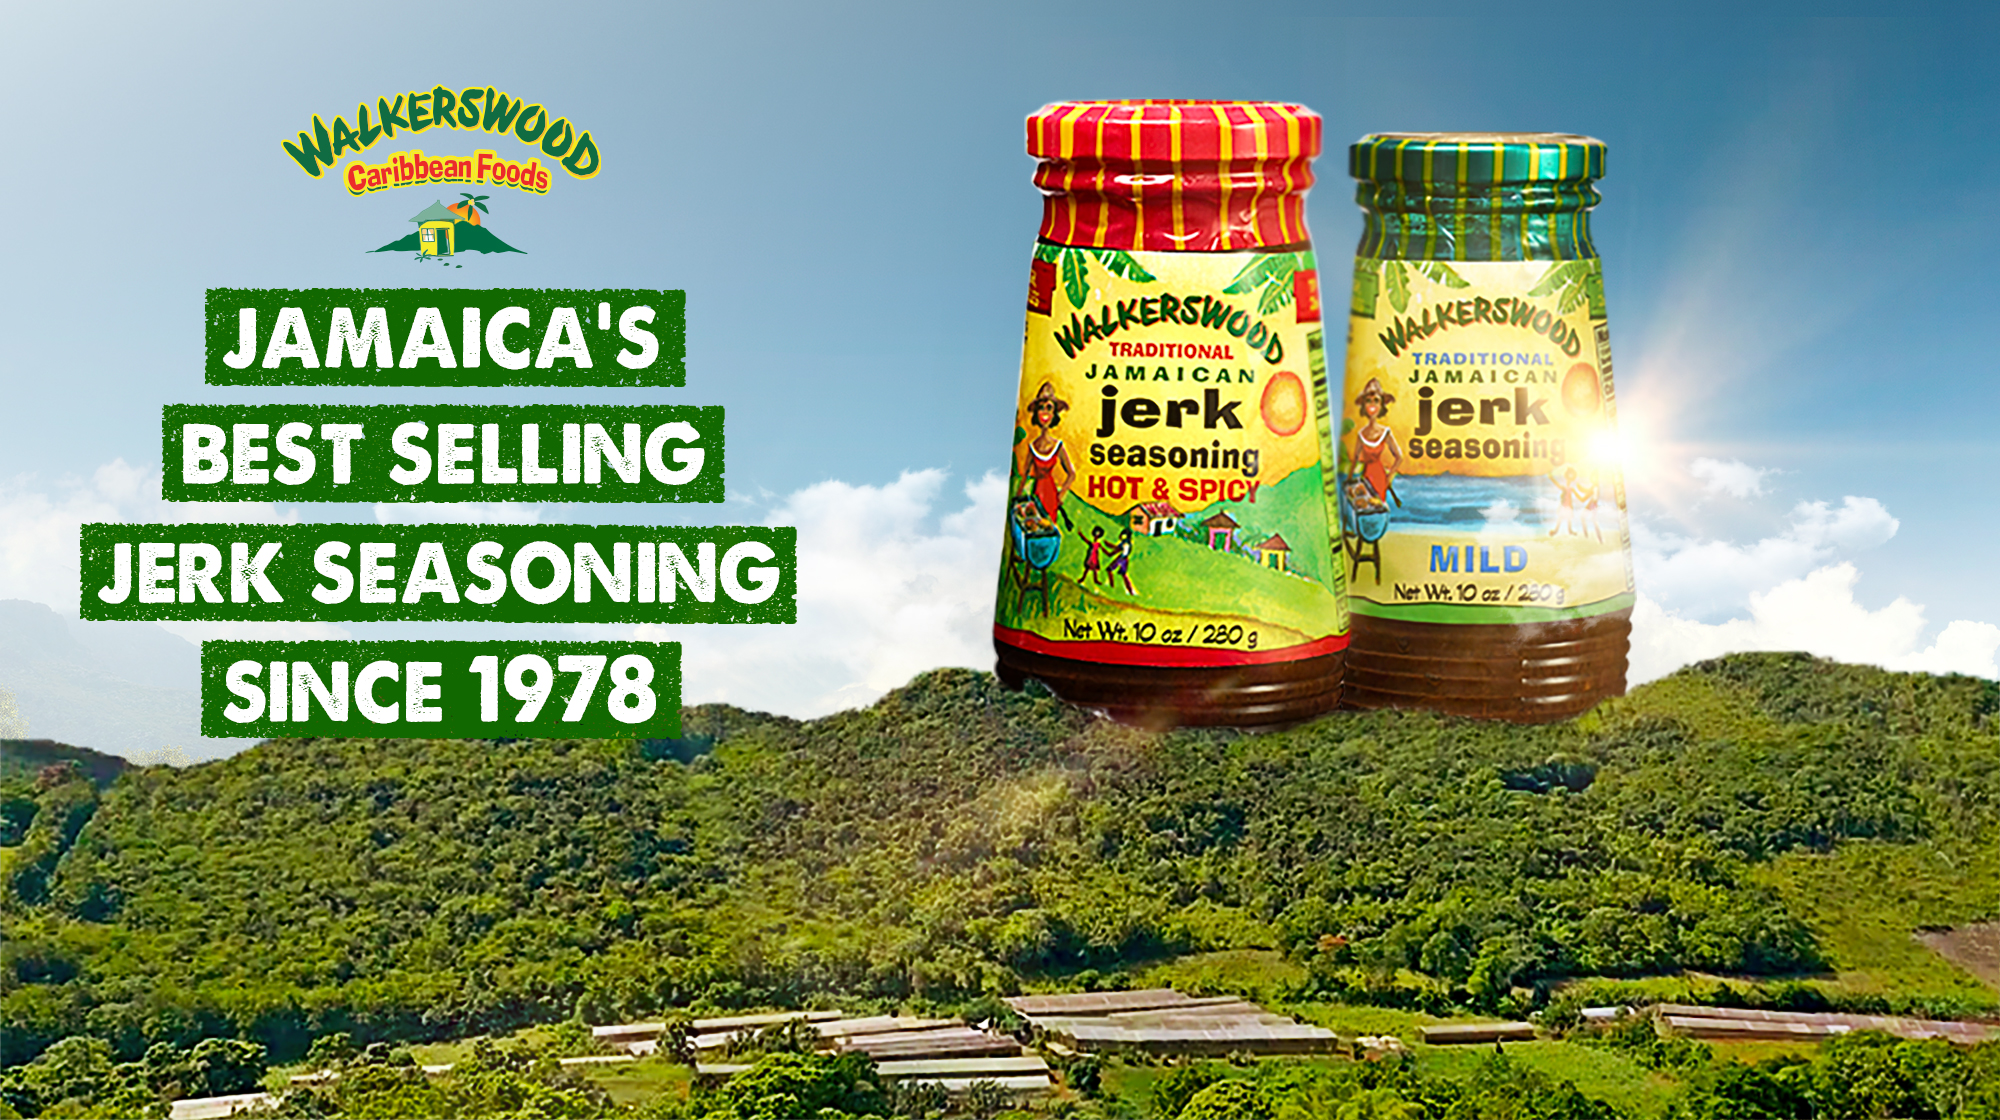 Walkerswood Traditional Jamaican Jerk Seasoning, Hot & Spicy, 10 Oz